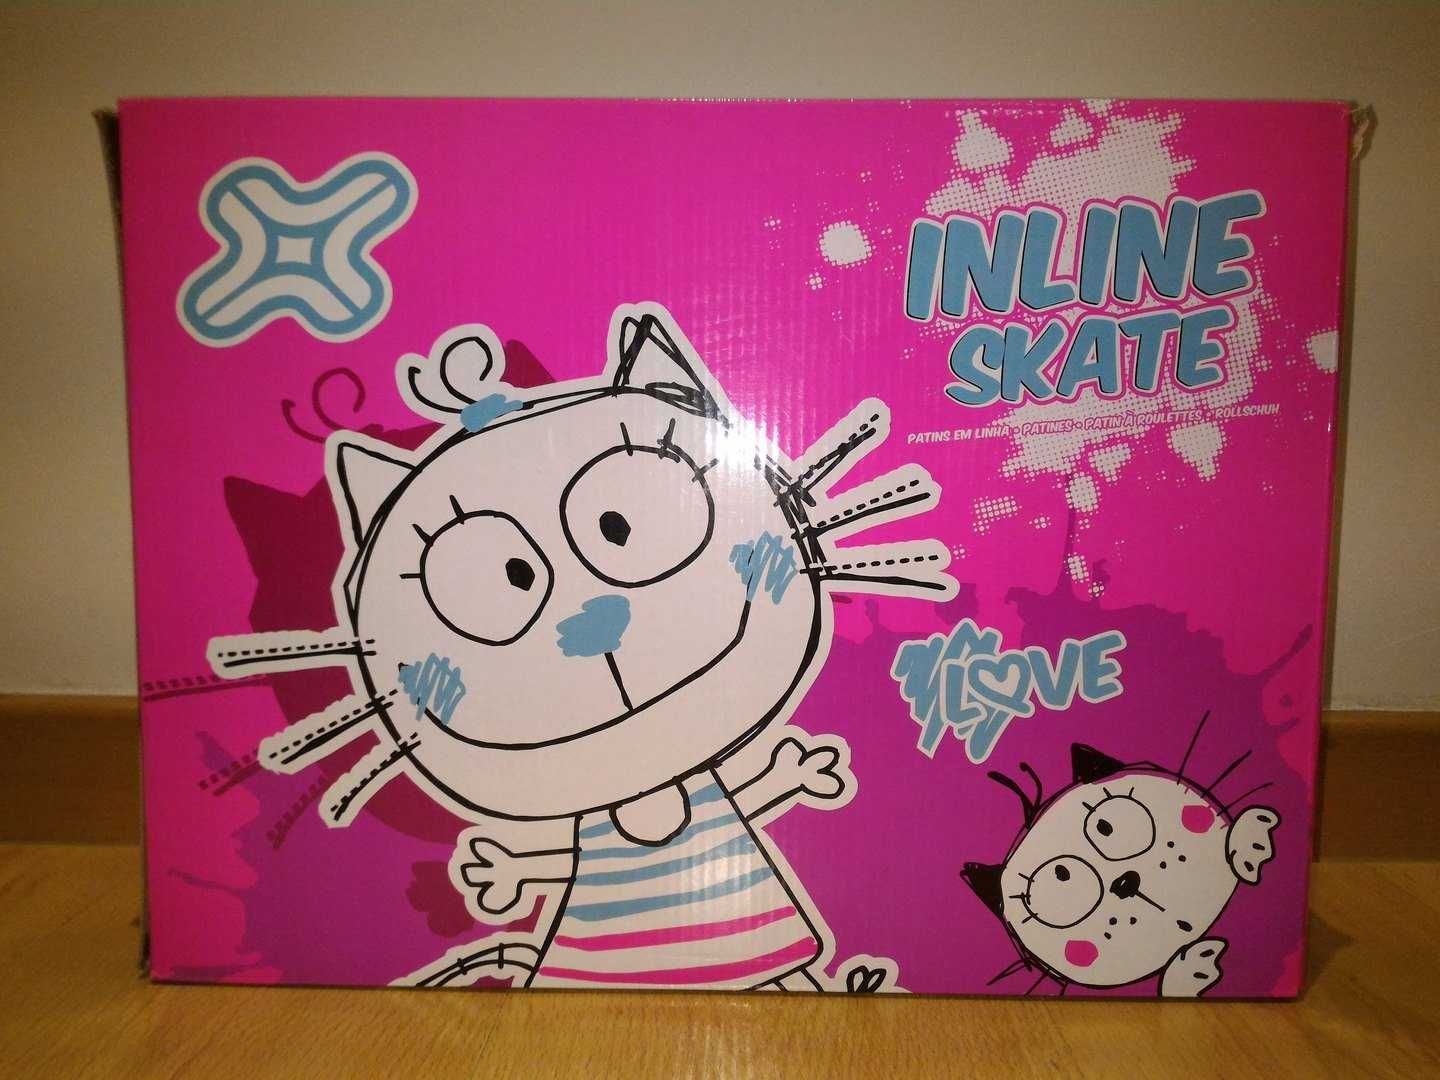 Inline Skate Patins em linha + Capacete + Joelheiras